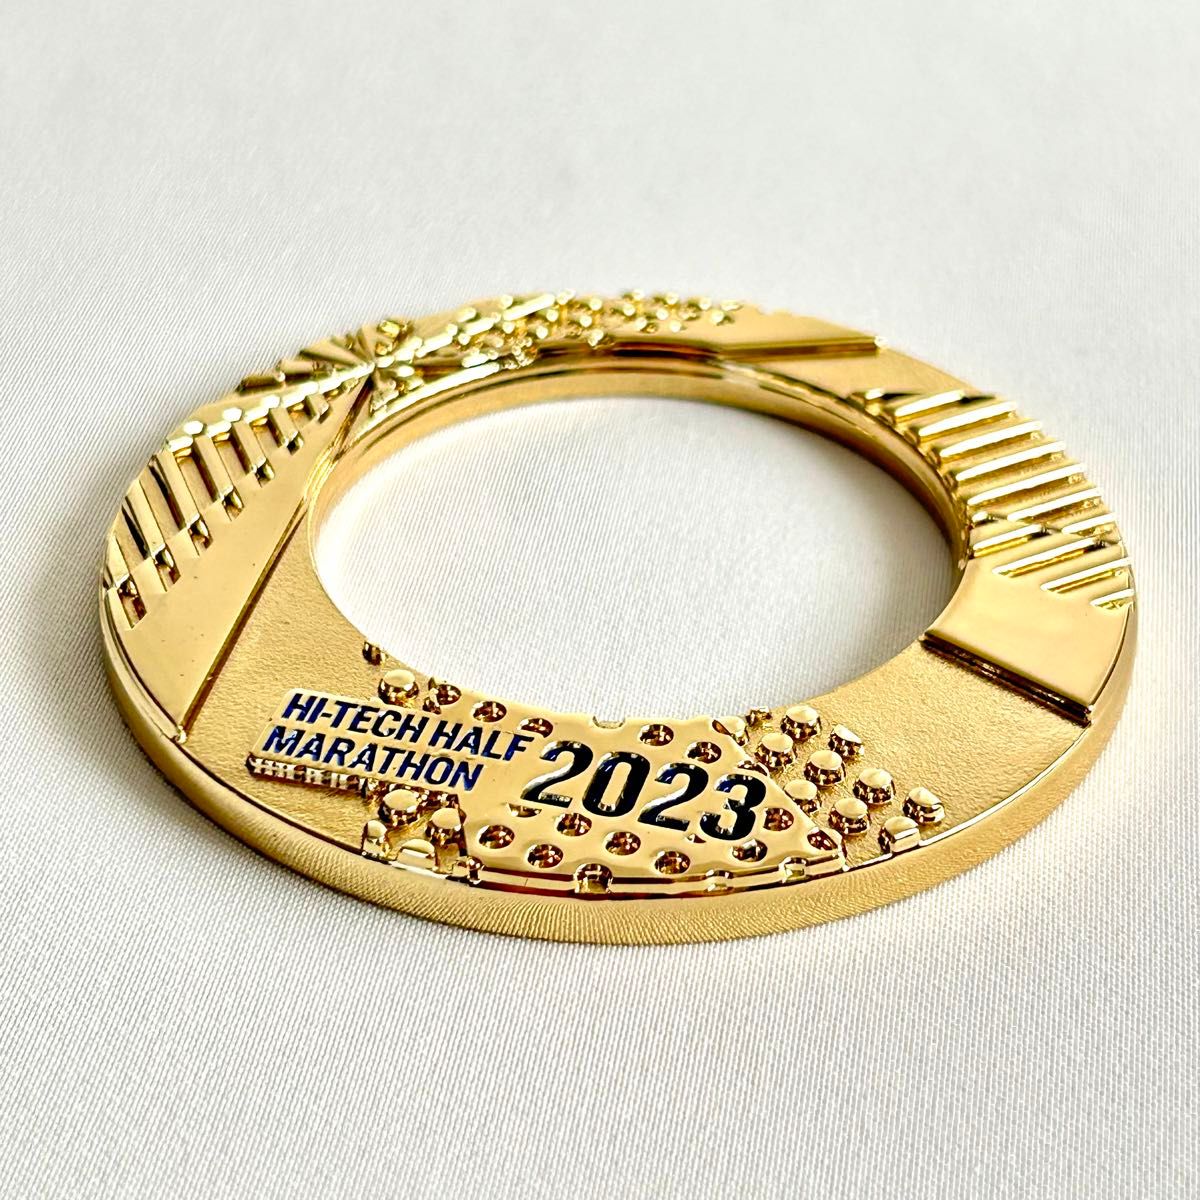 2023年１月8日開催 / ハイテクハーフマラソン / 完走記念メダル & 未使用タオル / 完全未使用 / 限定品